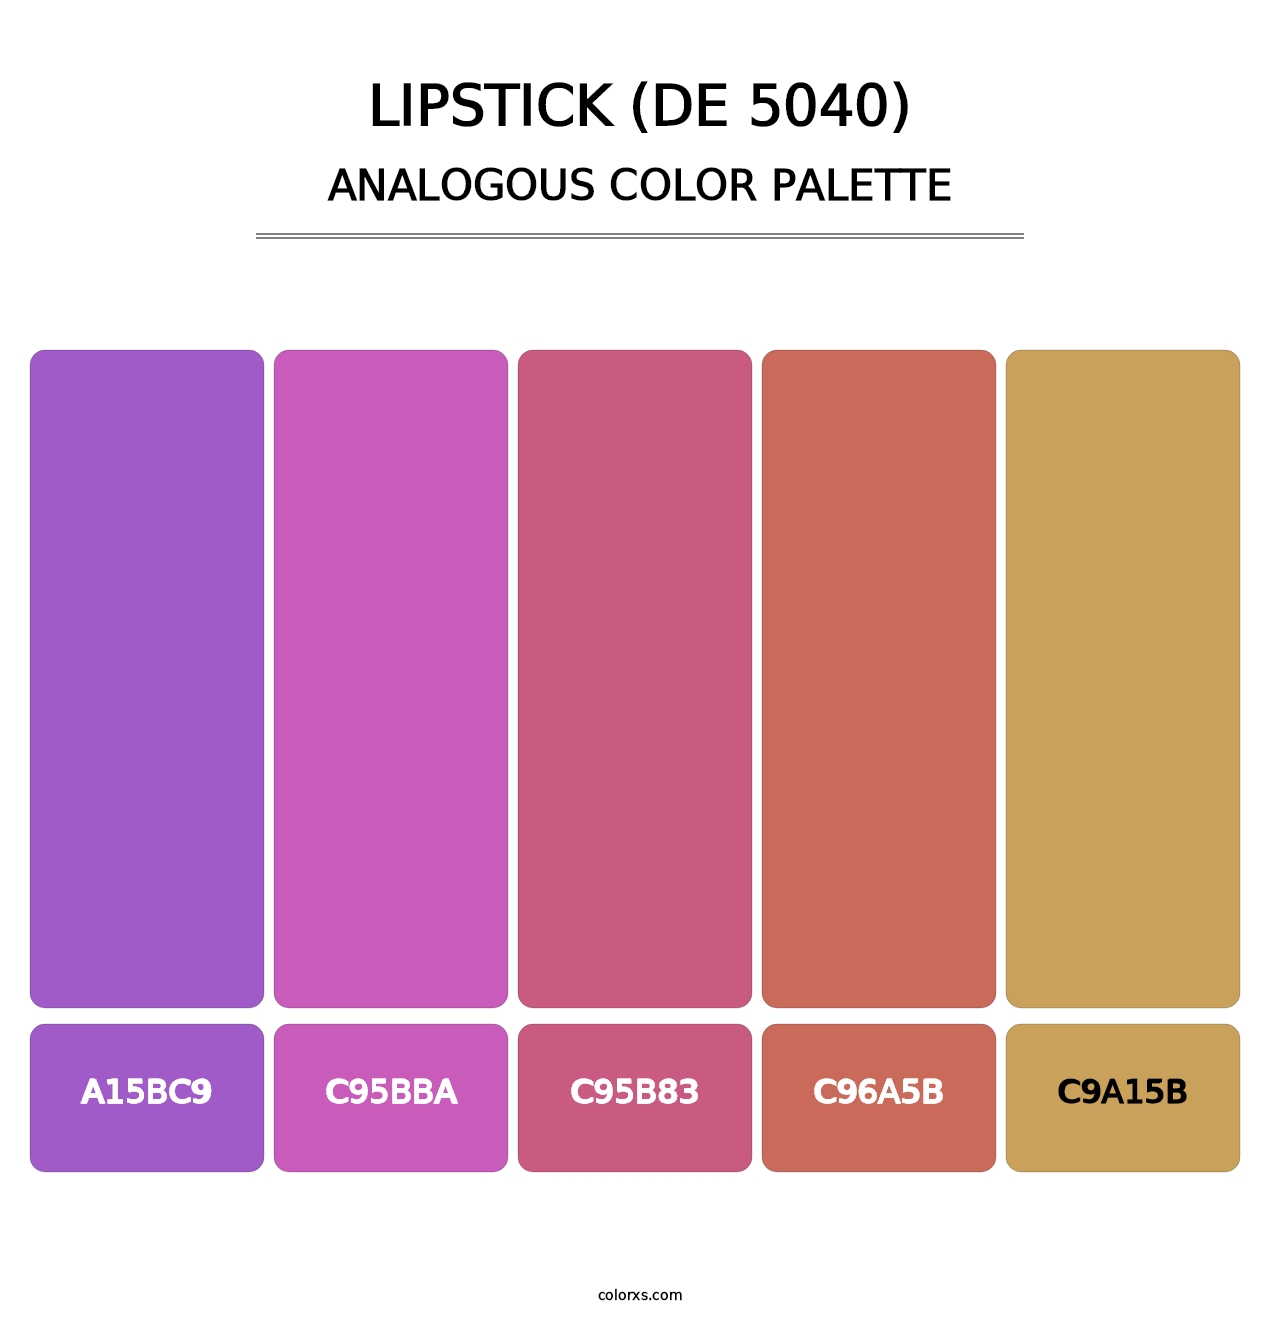 Lipstick (DE 5040) - Analogous Color Palette